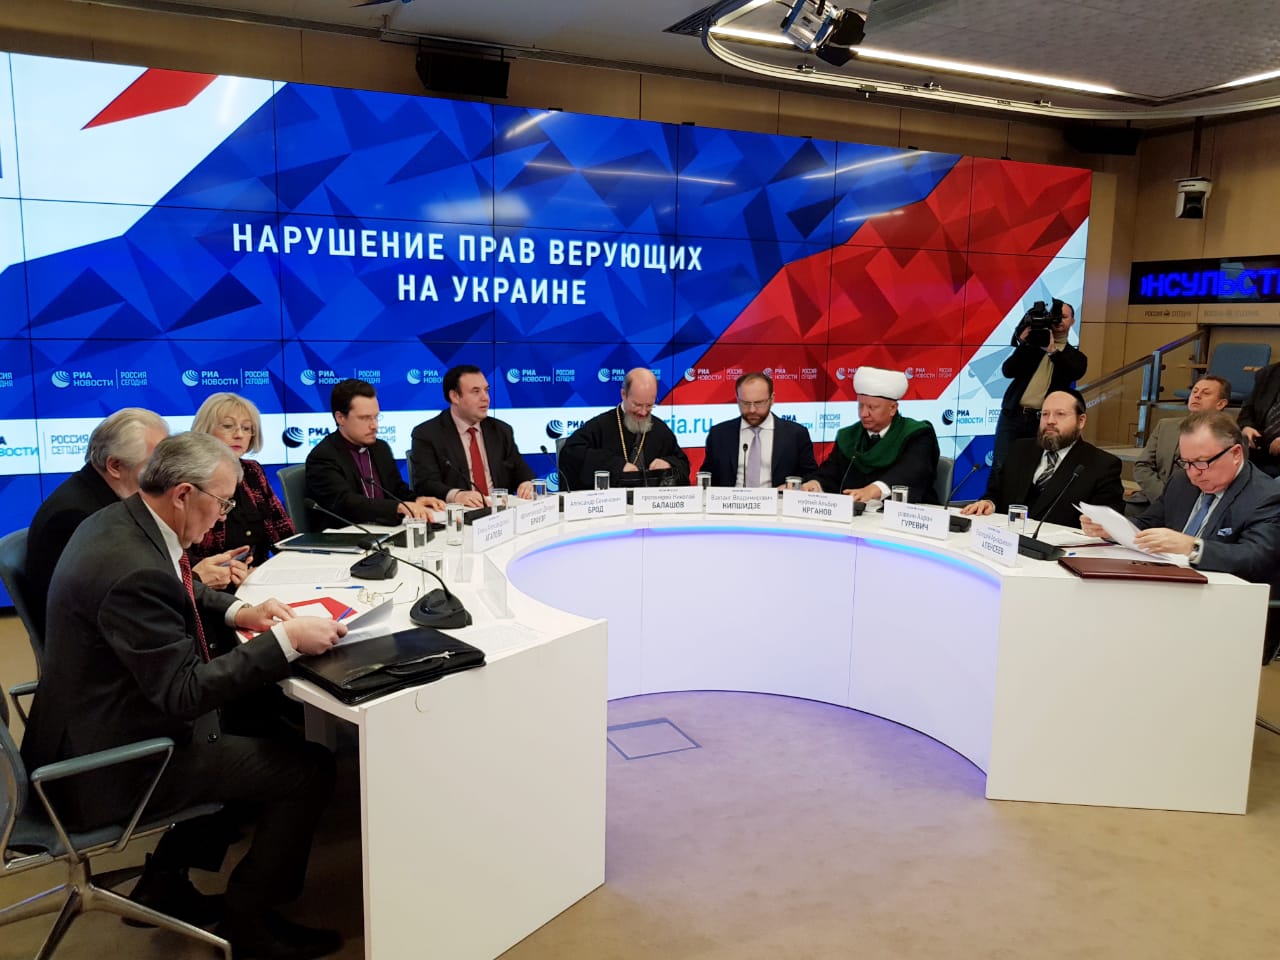 رئيس الجمعية الدينية لمسلمي روسيا شارك في الطاولة المستديرة الاعلامية للرابطة الروسية لحماية الحرية الدينية (RARS) التي عقدت في وكالة الانباء الدولية 